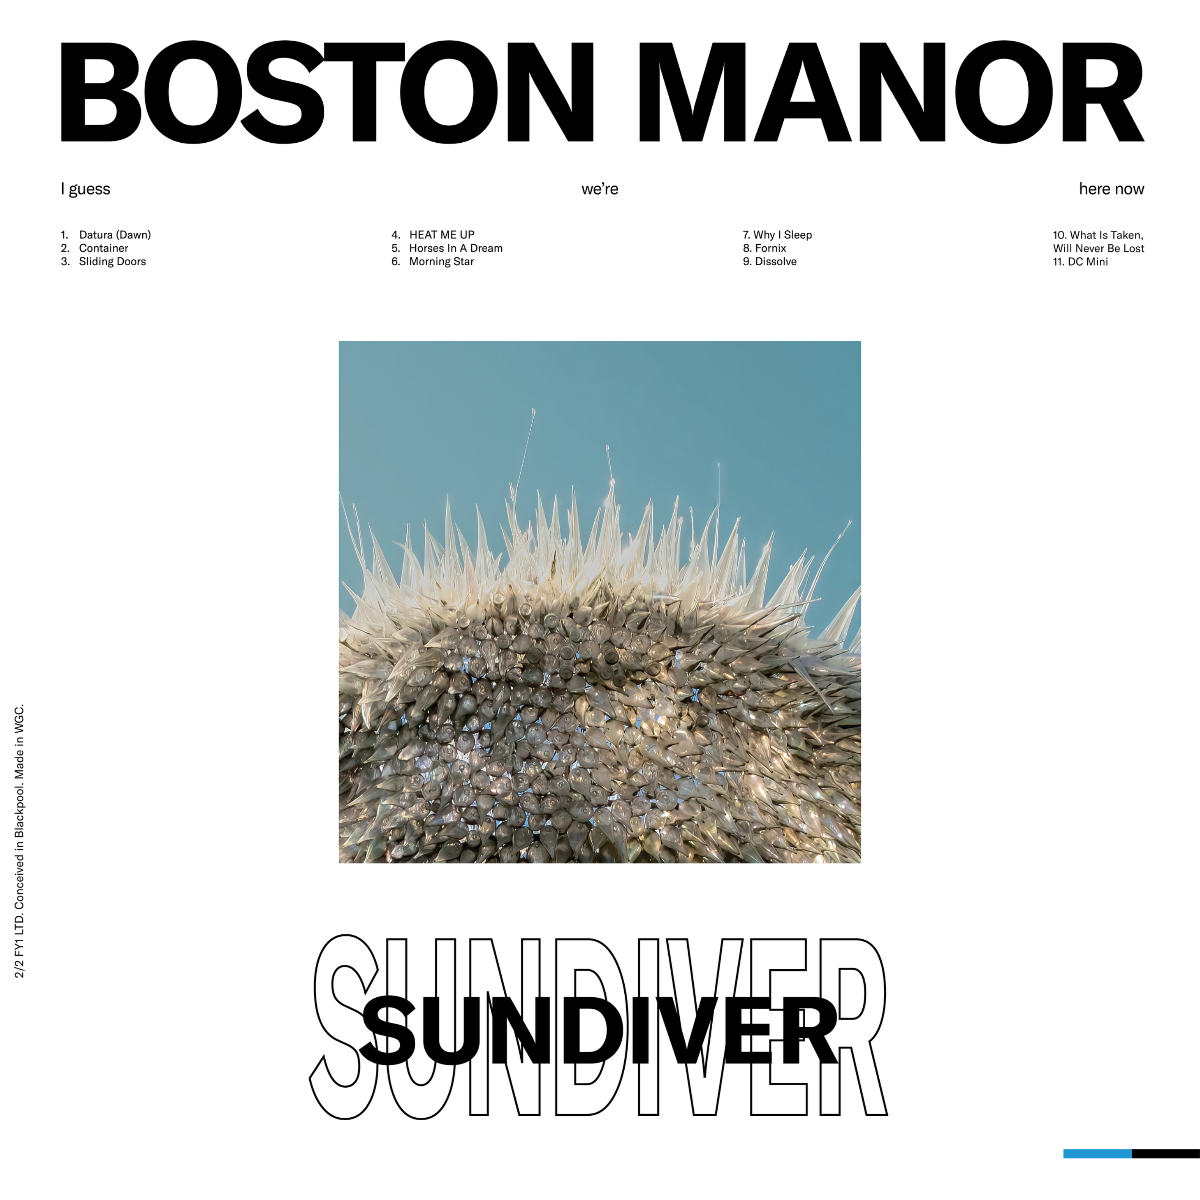 Boston Manor Sundiver album artwork